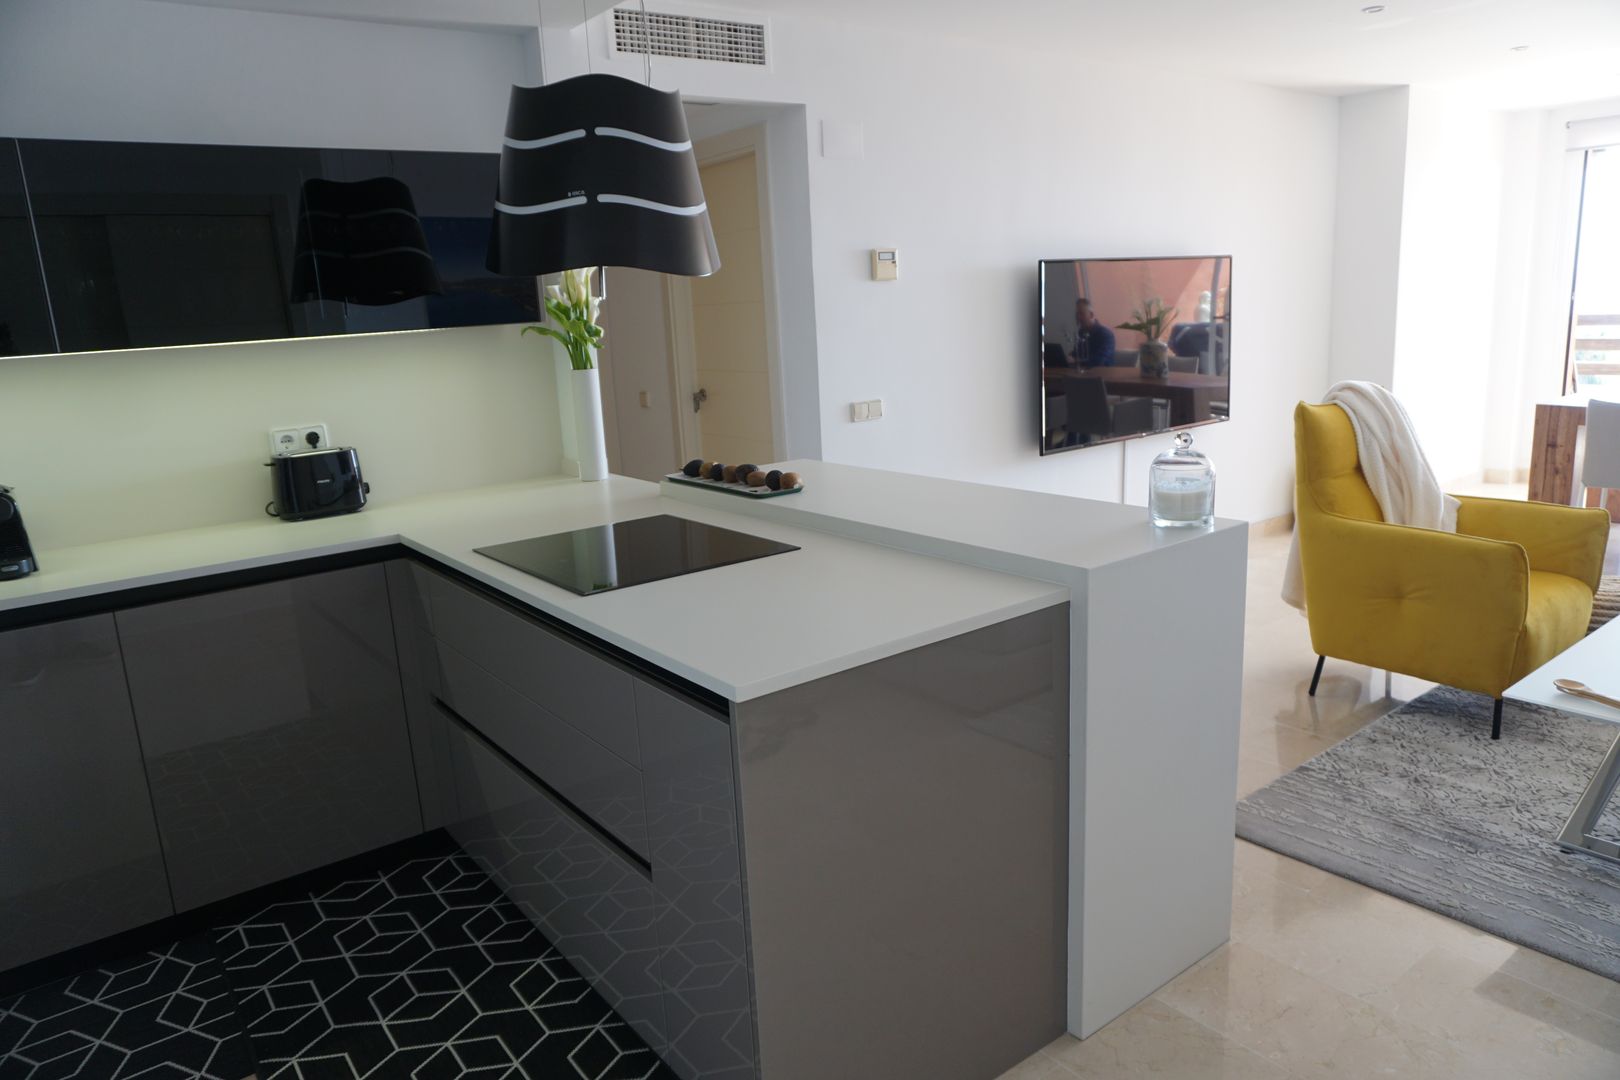 Proyecto e instalación de cocina moderna abierta al salón en Málaga, Decodan - Estudio de cocinas y armarios en Estepona y Marbella Decodan - Estudio de cocinas y armarios en Estepona y Marbella Małe kuchnie